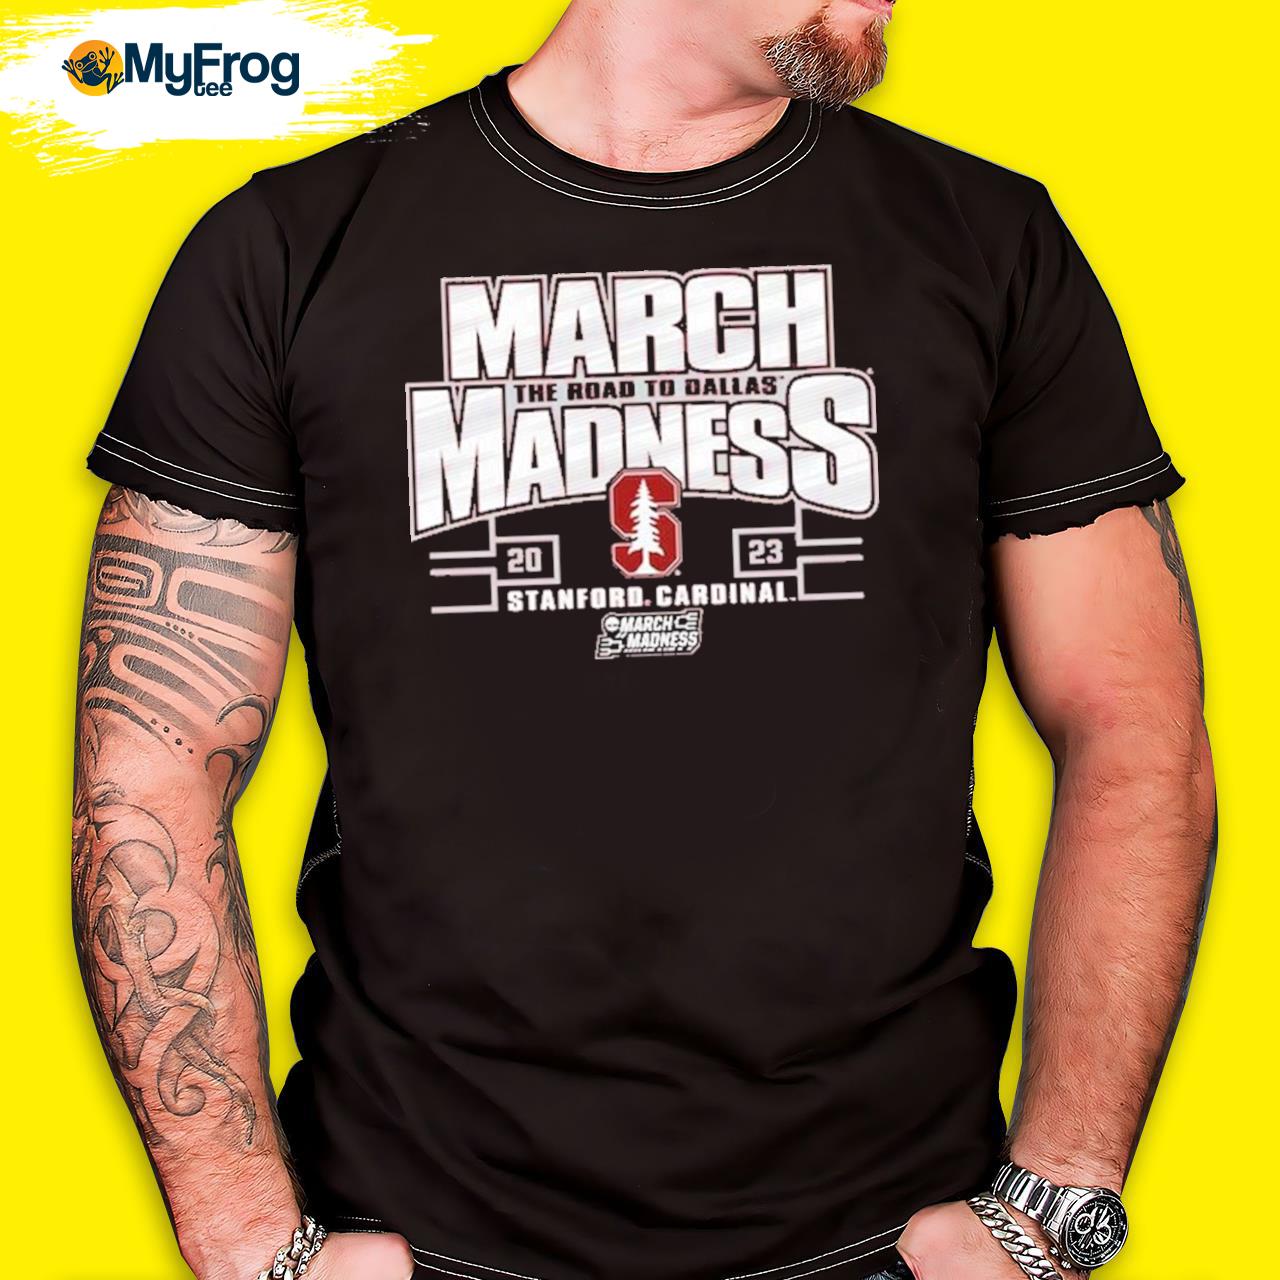 Stanford Cardinal Blue 84 2023 Ncaa Women’s Basketball Tournament March Madness T-shirt